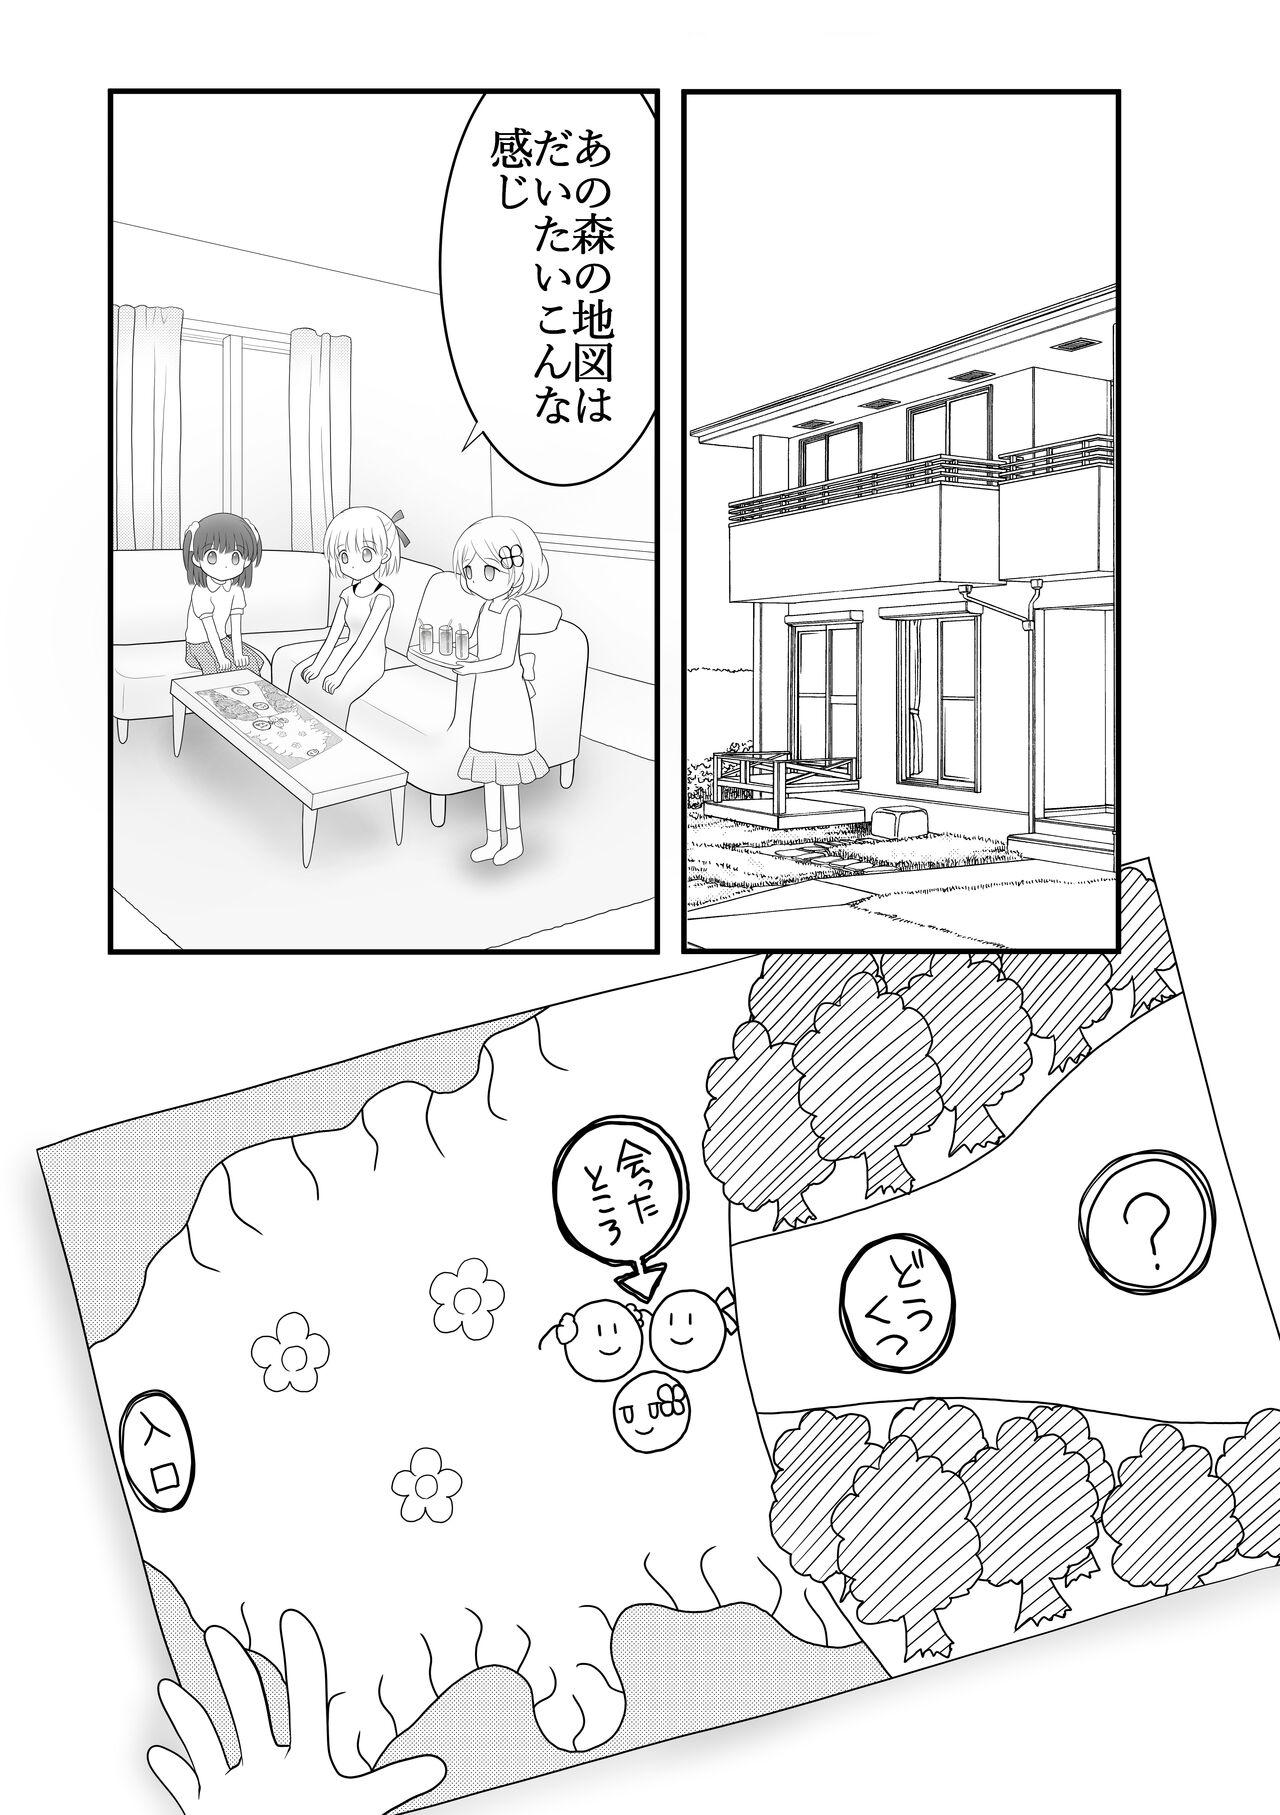 8teen Maigo no Mori no Kusuguribana 5 - Original Tia - Page 2